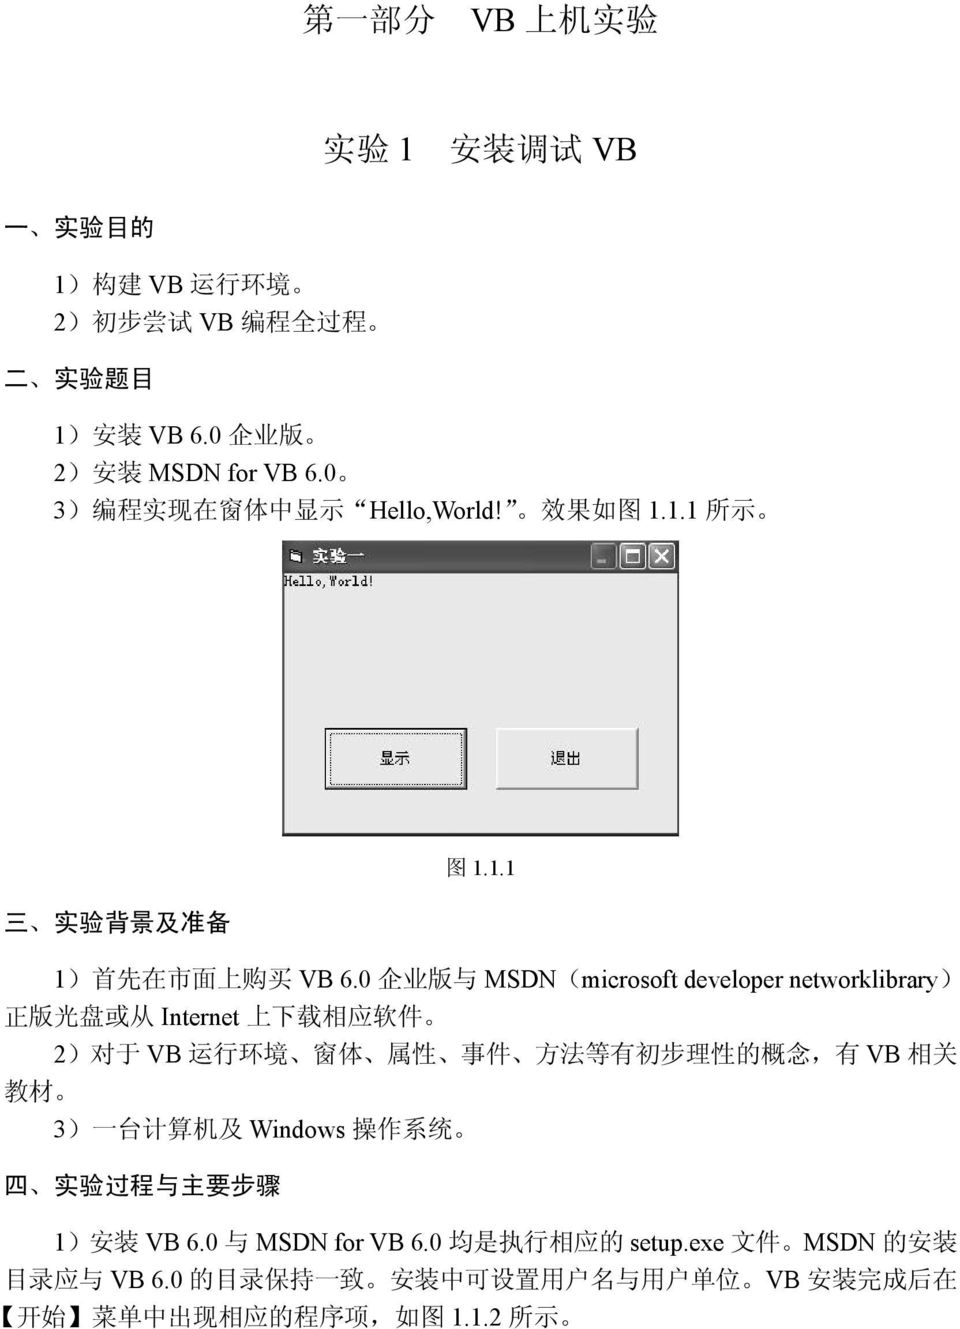 0 企 业 版 与 MSDN(microsoft developer networklibrary) 正 版 光 盘 或 从 Internet 上 下 载 相 应 软 件 2) 对 于 VB 运 行 环 境 窗 体 属 性 事 件 方 法 等 有 初 步 理 性 的 概 念, 有 VB 相 关 教 材 3) 一